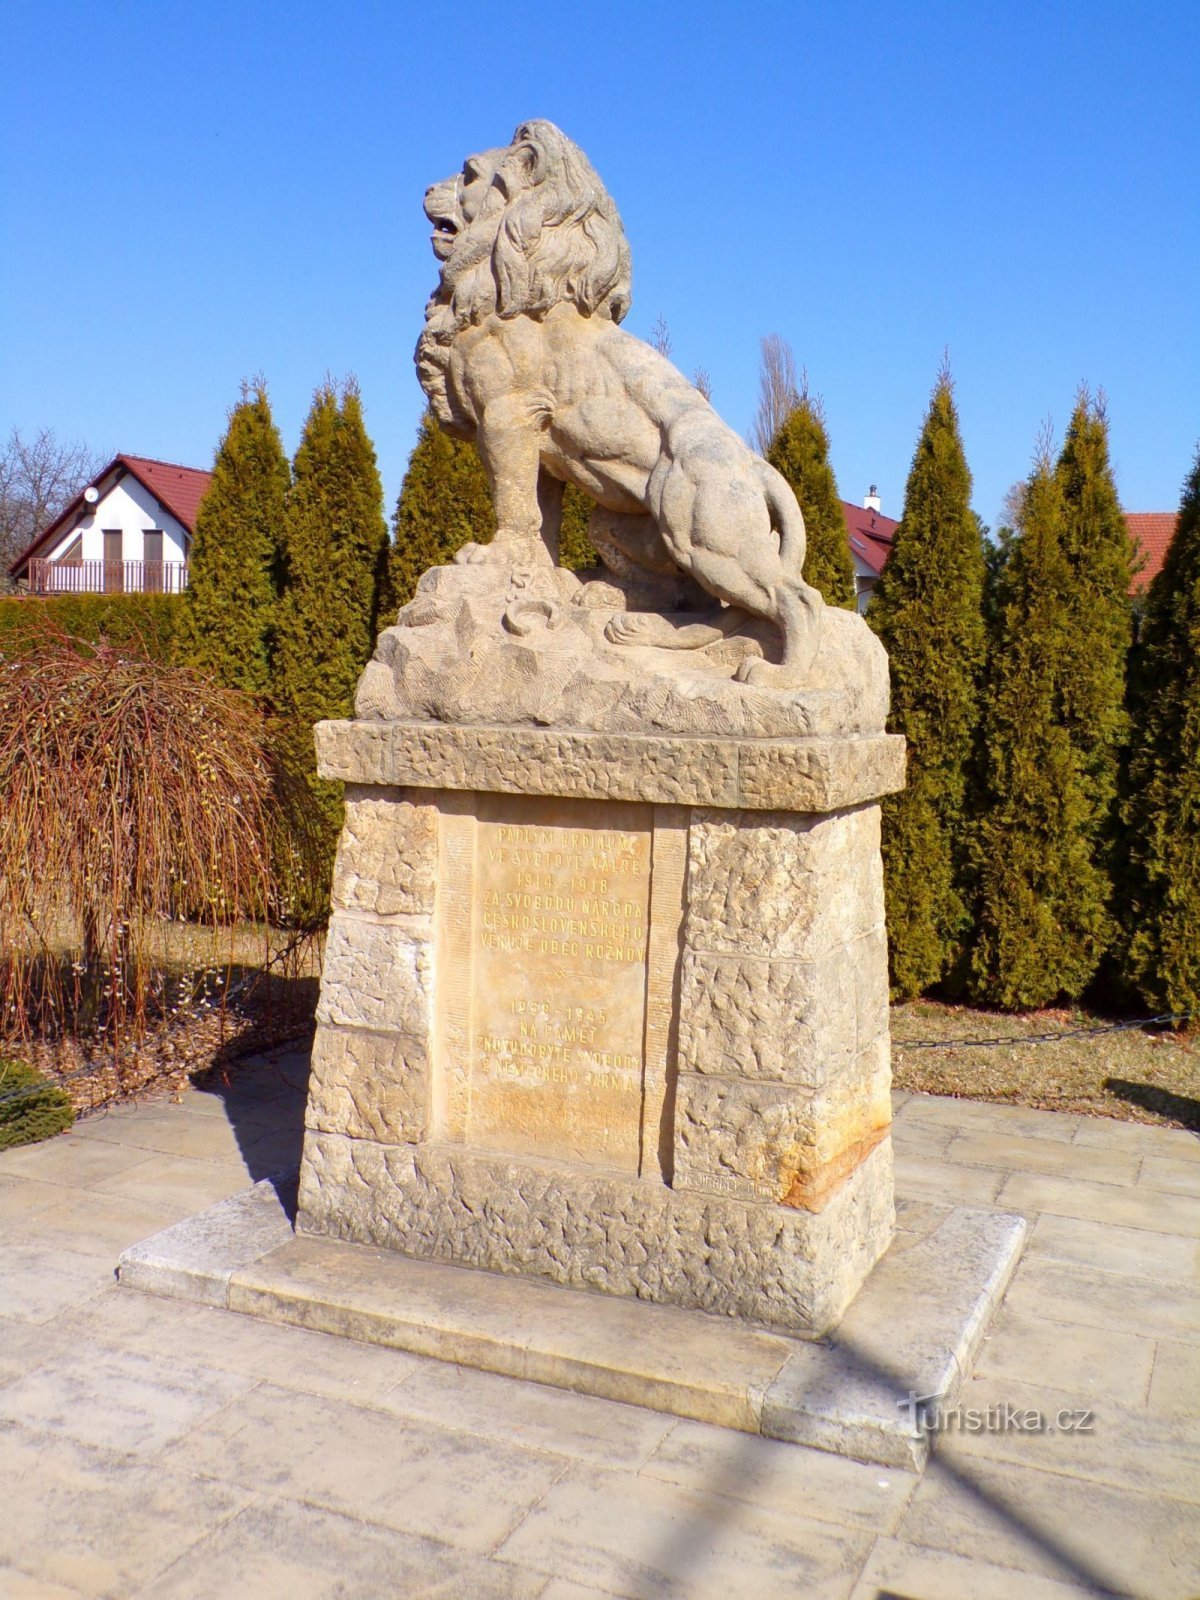 Đài tưởng niệm những người đã ngã xuống (Rožnov, 20.3.2022)